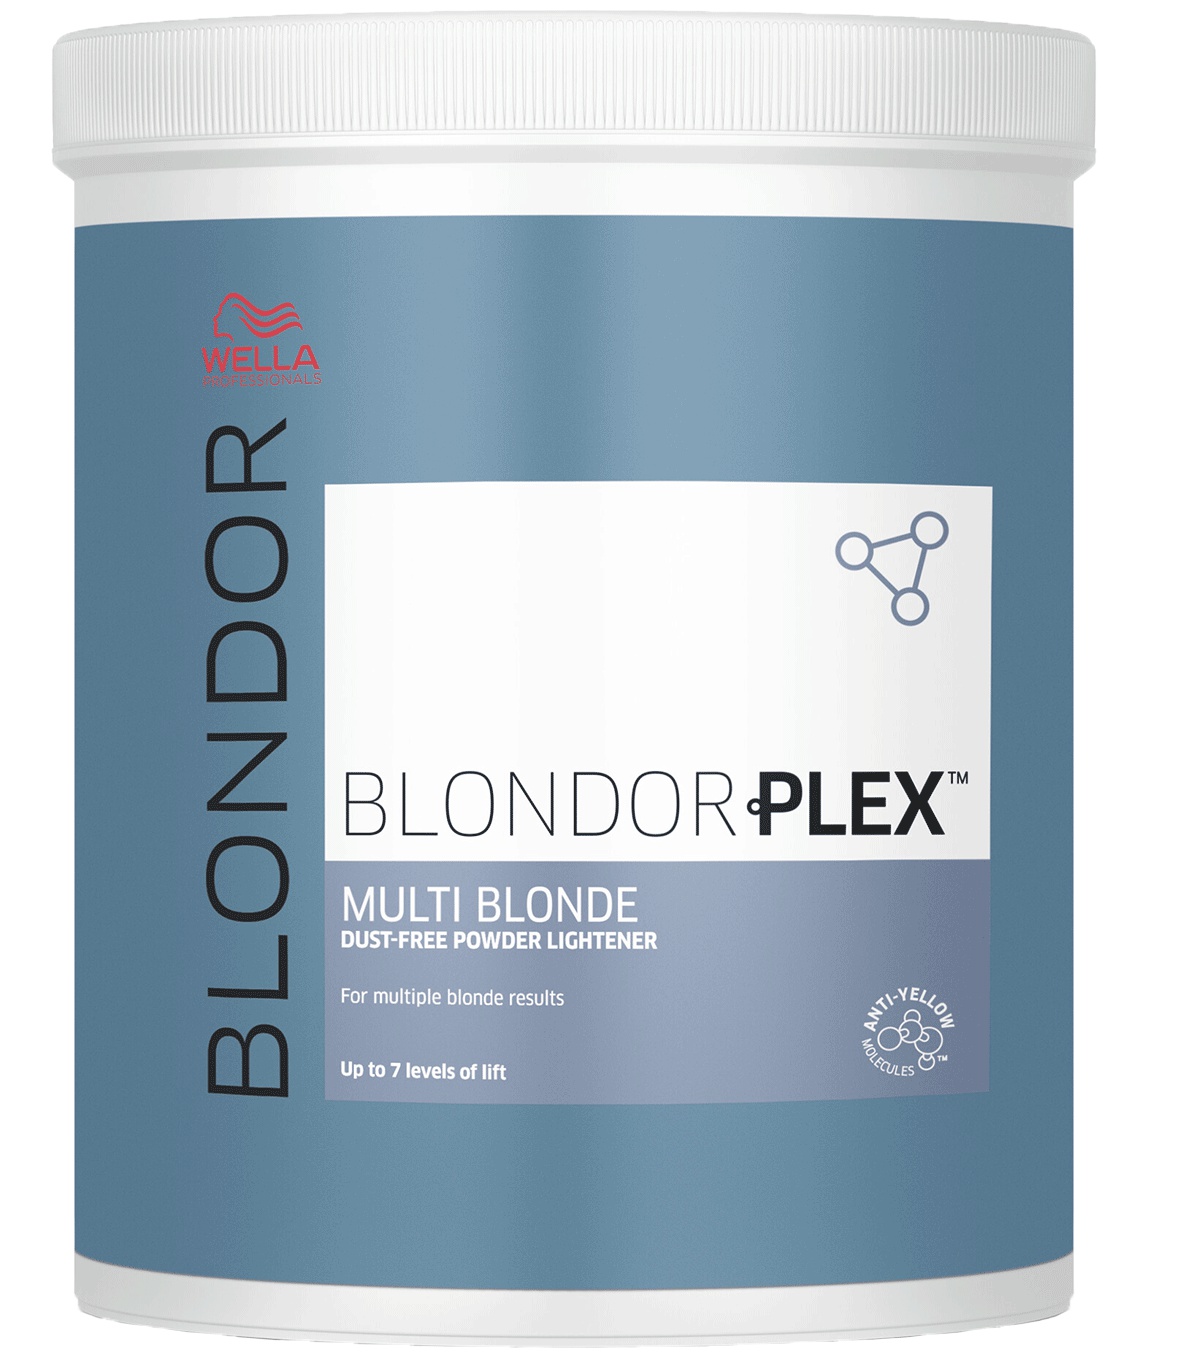 Wella Professionals Blondorplex Multi Blonde Dust-free Powder Lightener